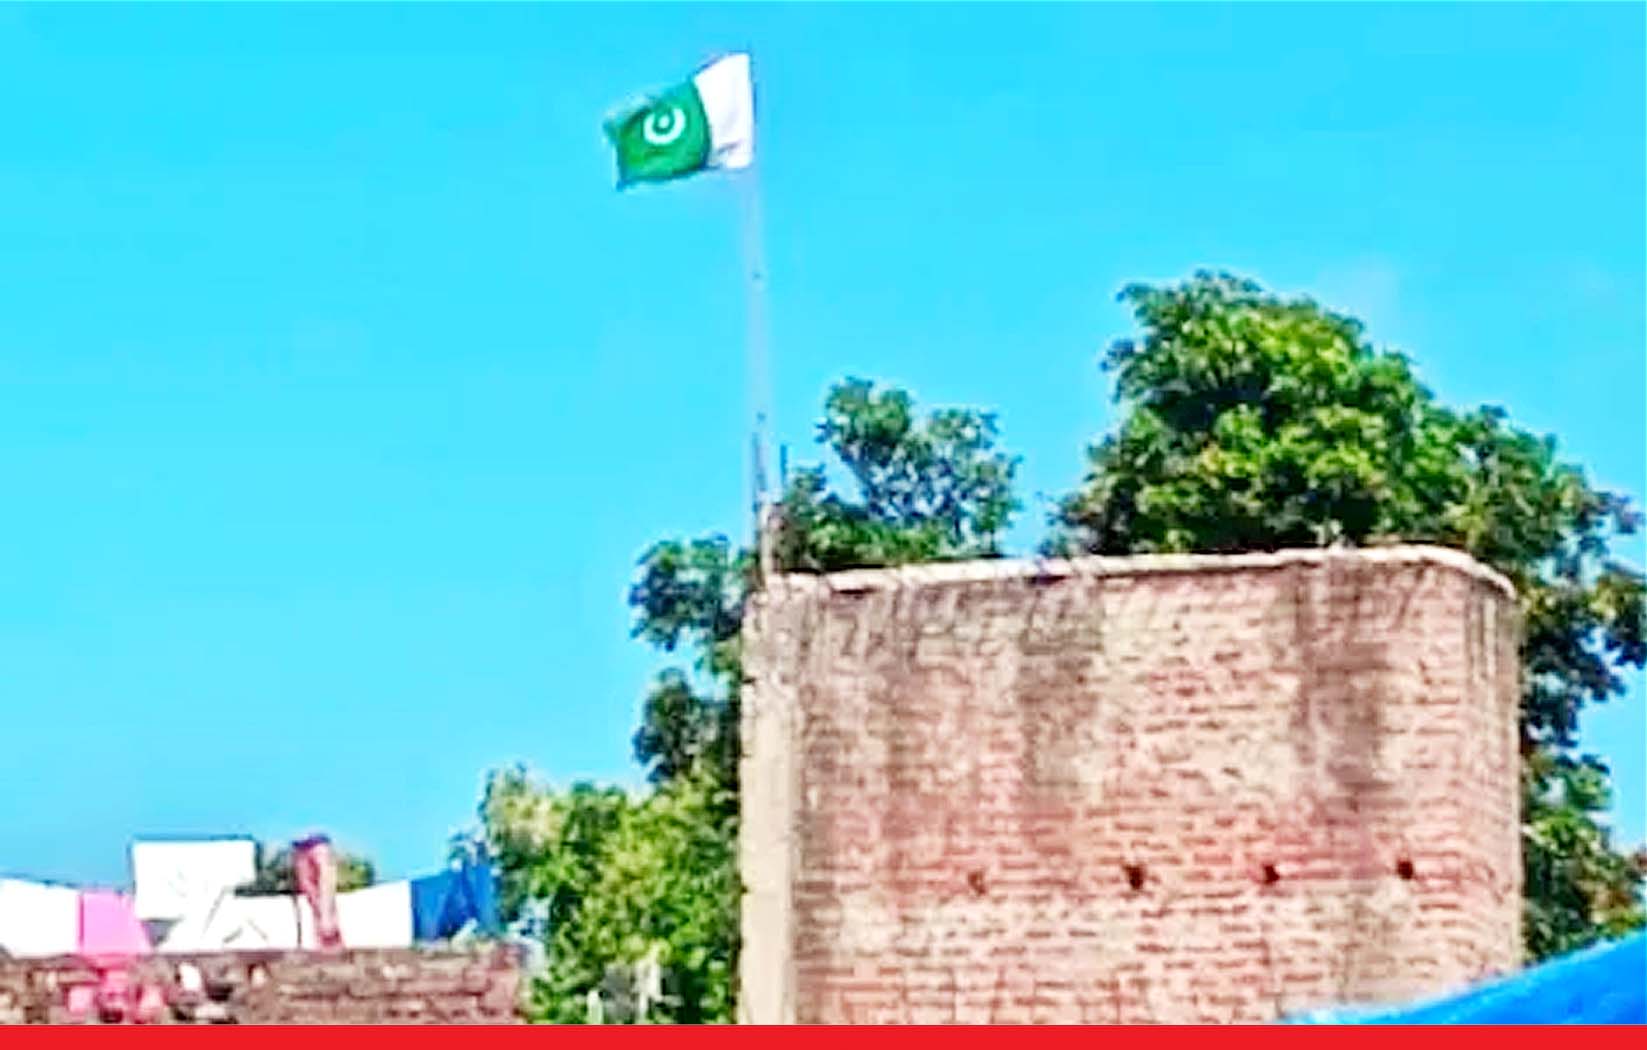 कुशीनगर में युवक ने घर में फहराया पाकिस्तानी झंडा, केस दर्ज